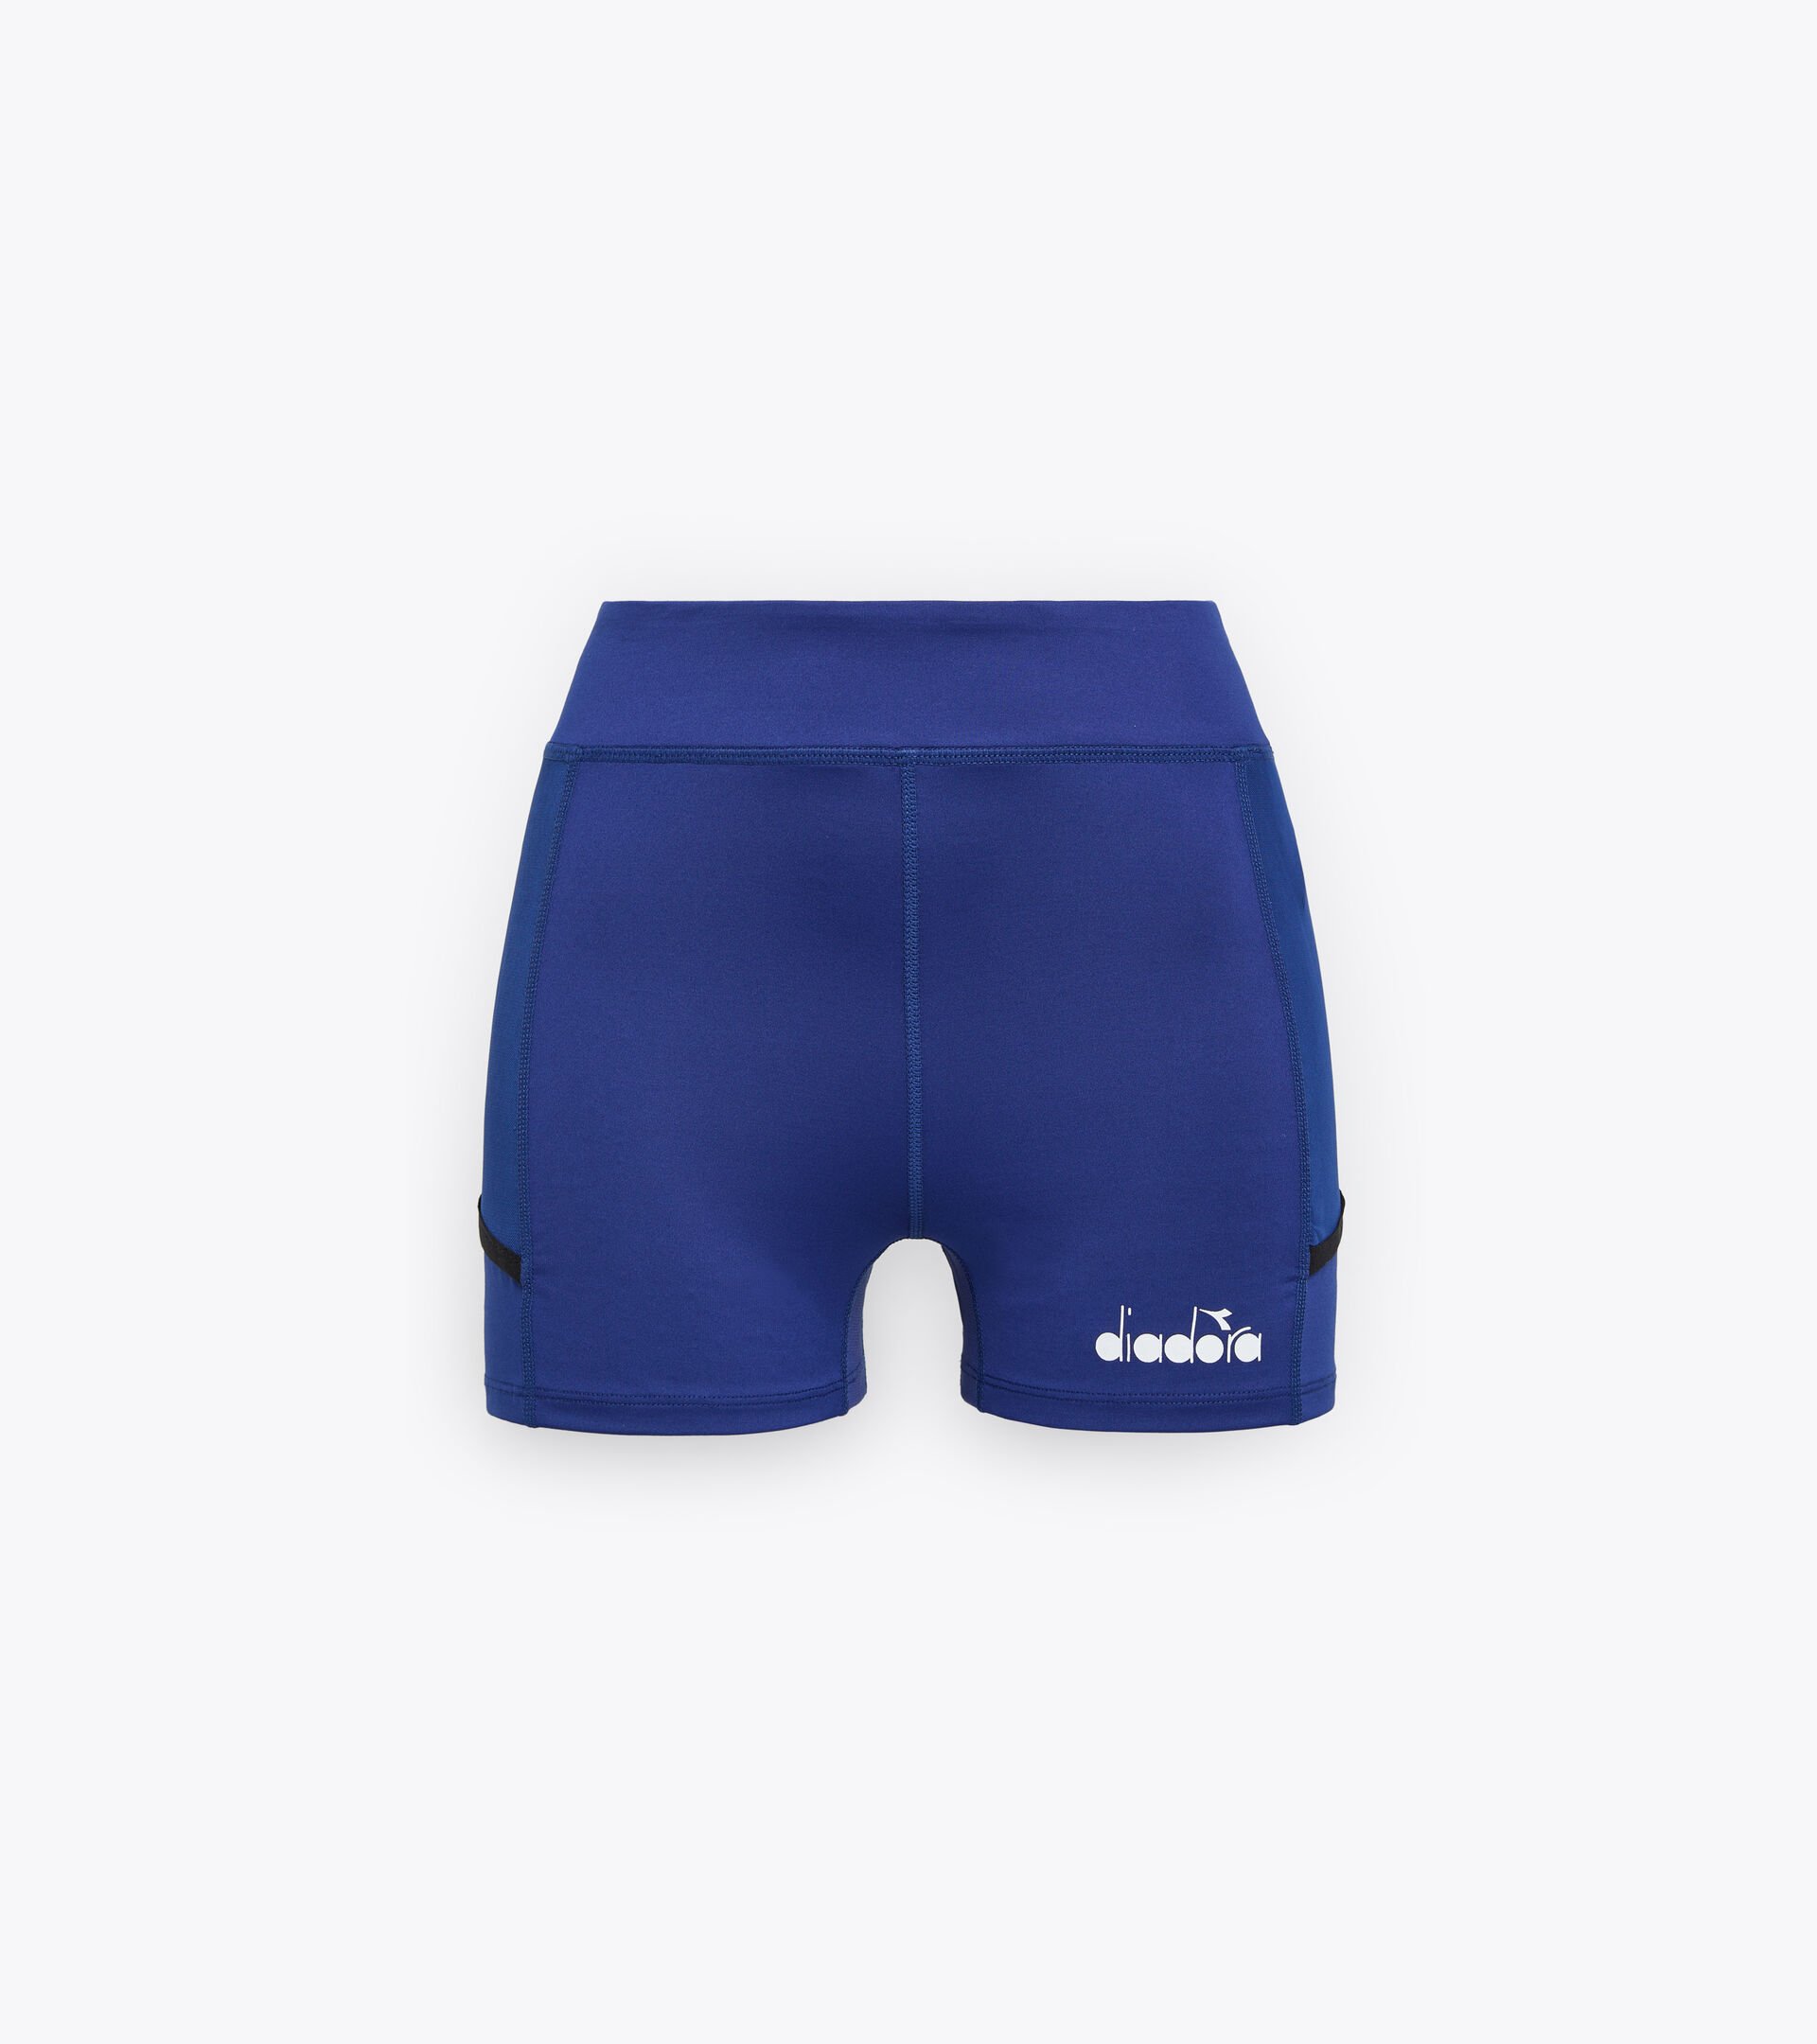 Pantalones cortos de tenis - Mujer L. SHORT TIGHTS POCKET CIANOTIPO AZUL - Diadora